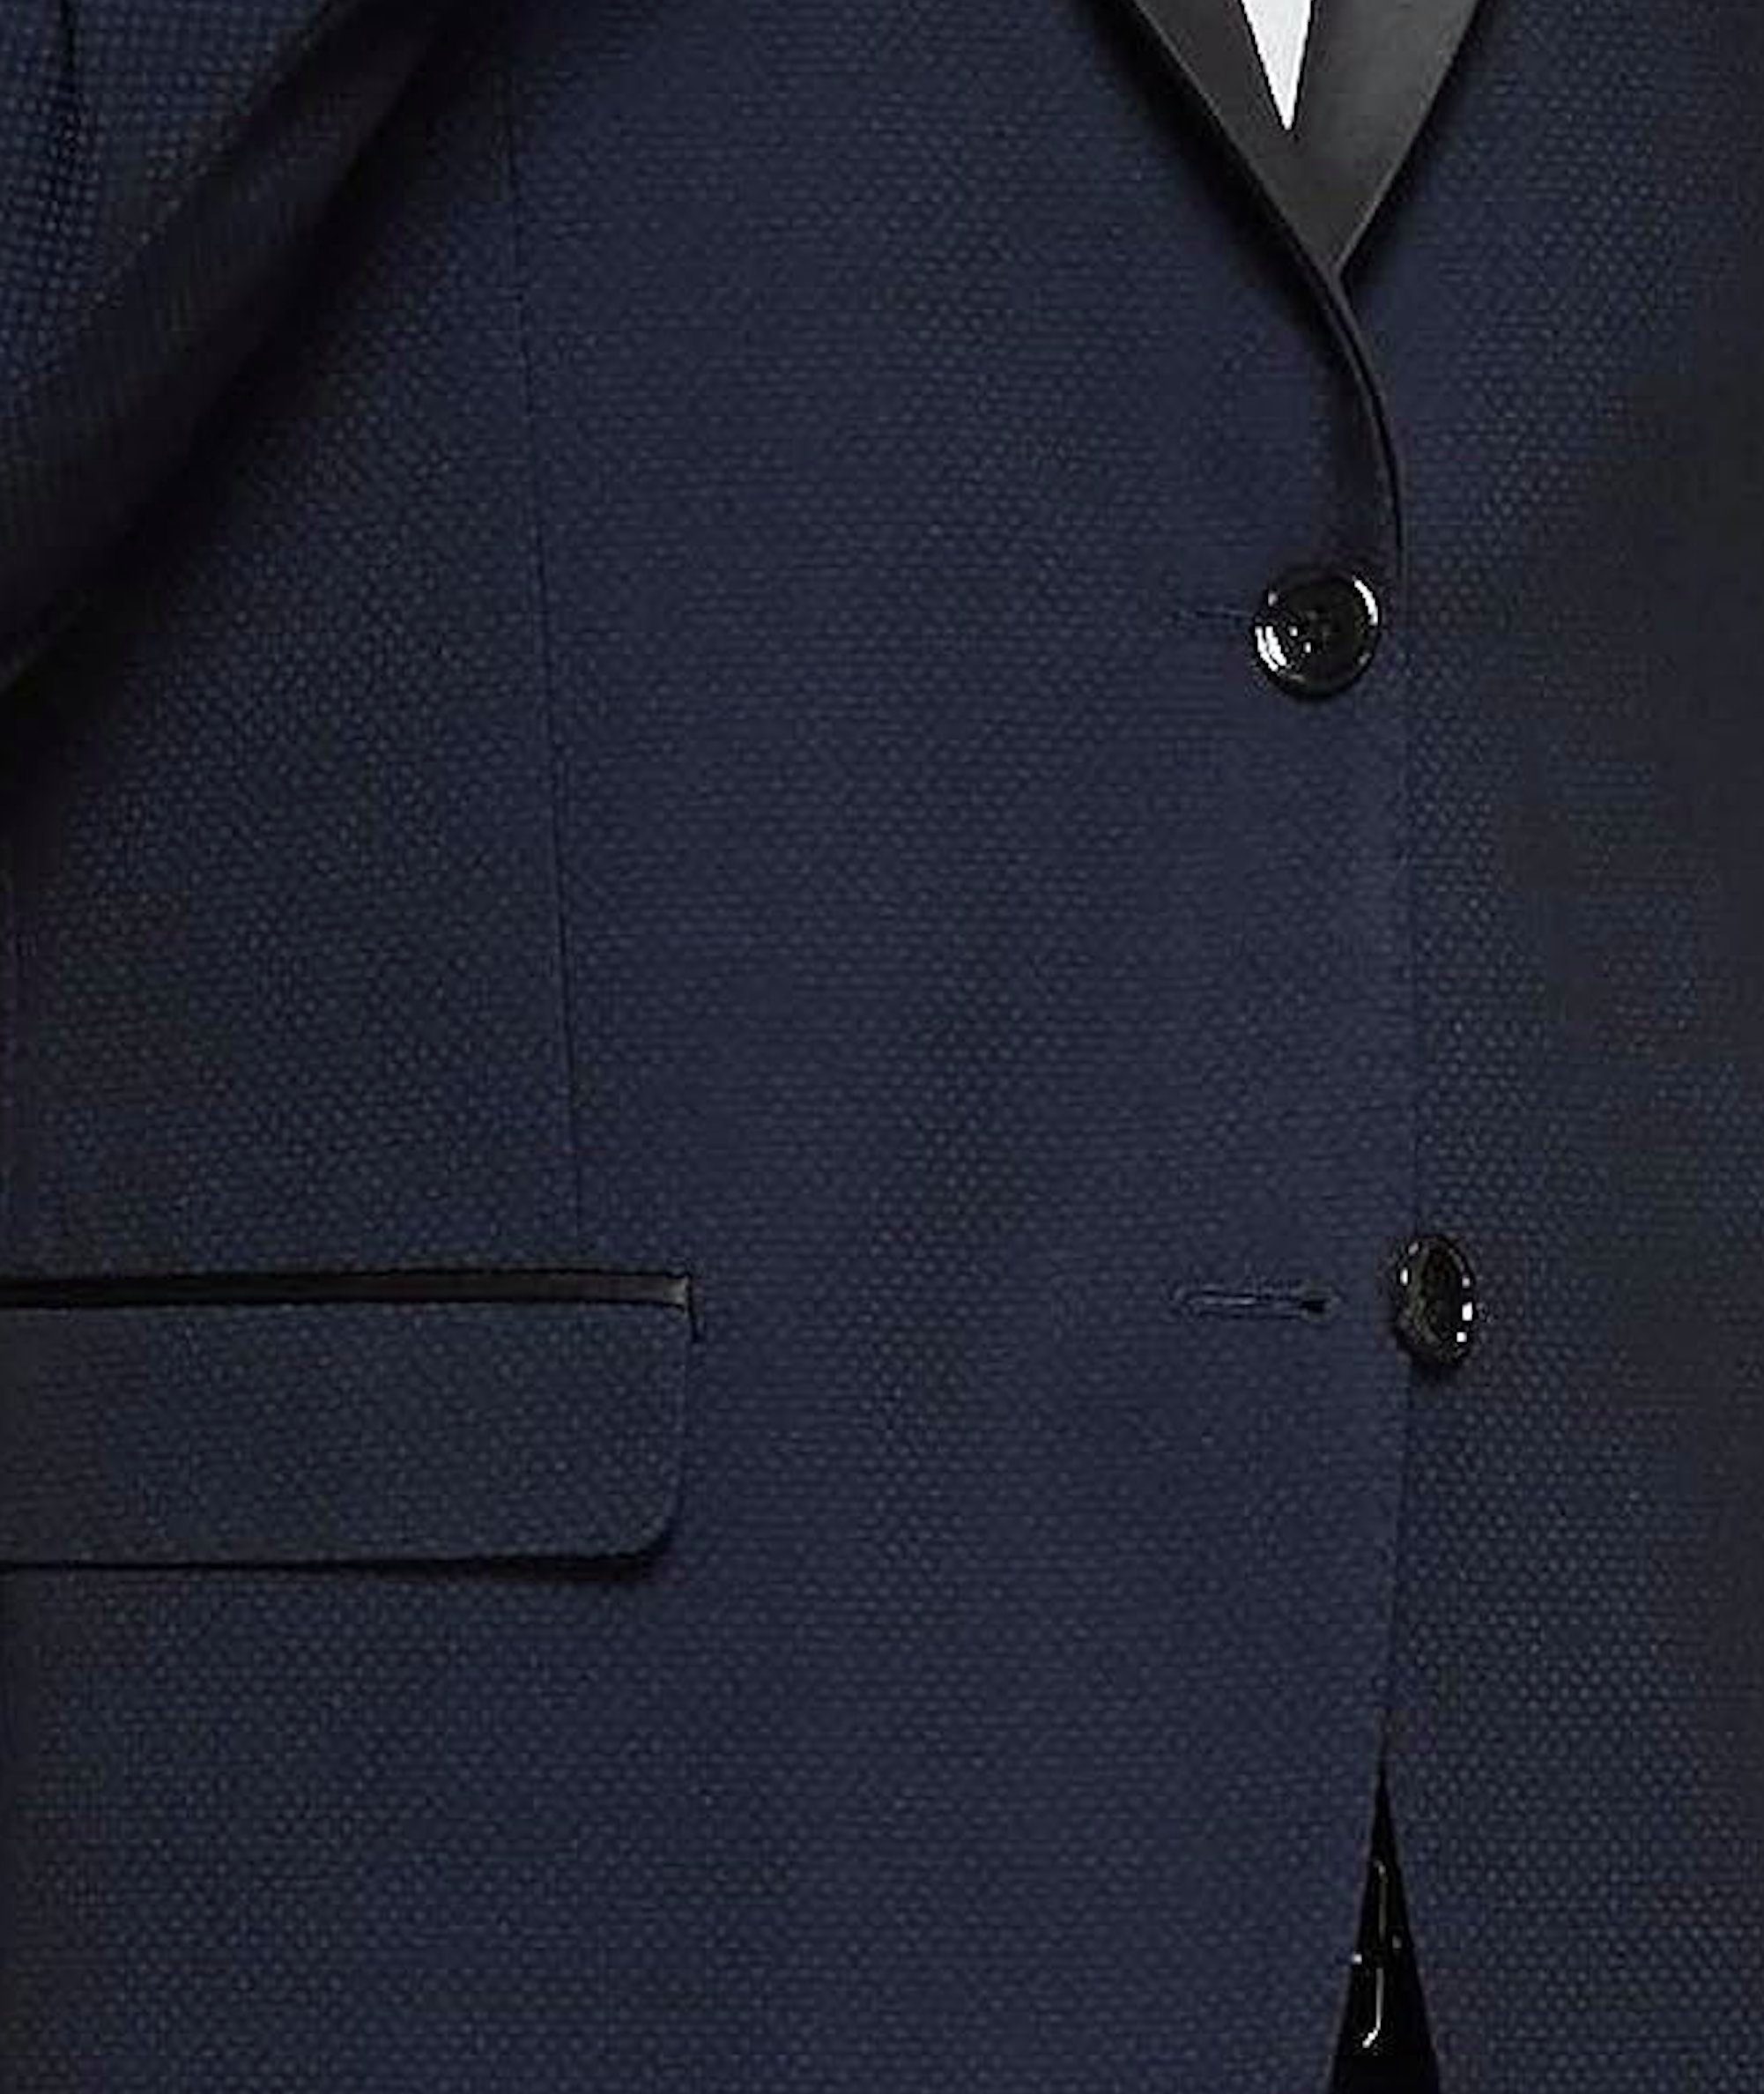 Keskin Collection Keskin Festlicher Anzug 4-teilig Herren Anzug Set 4-teilig Collection Anzug